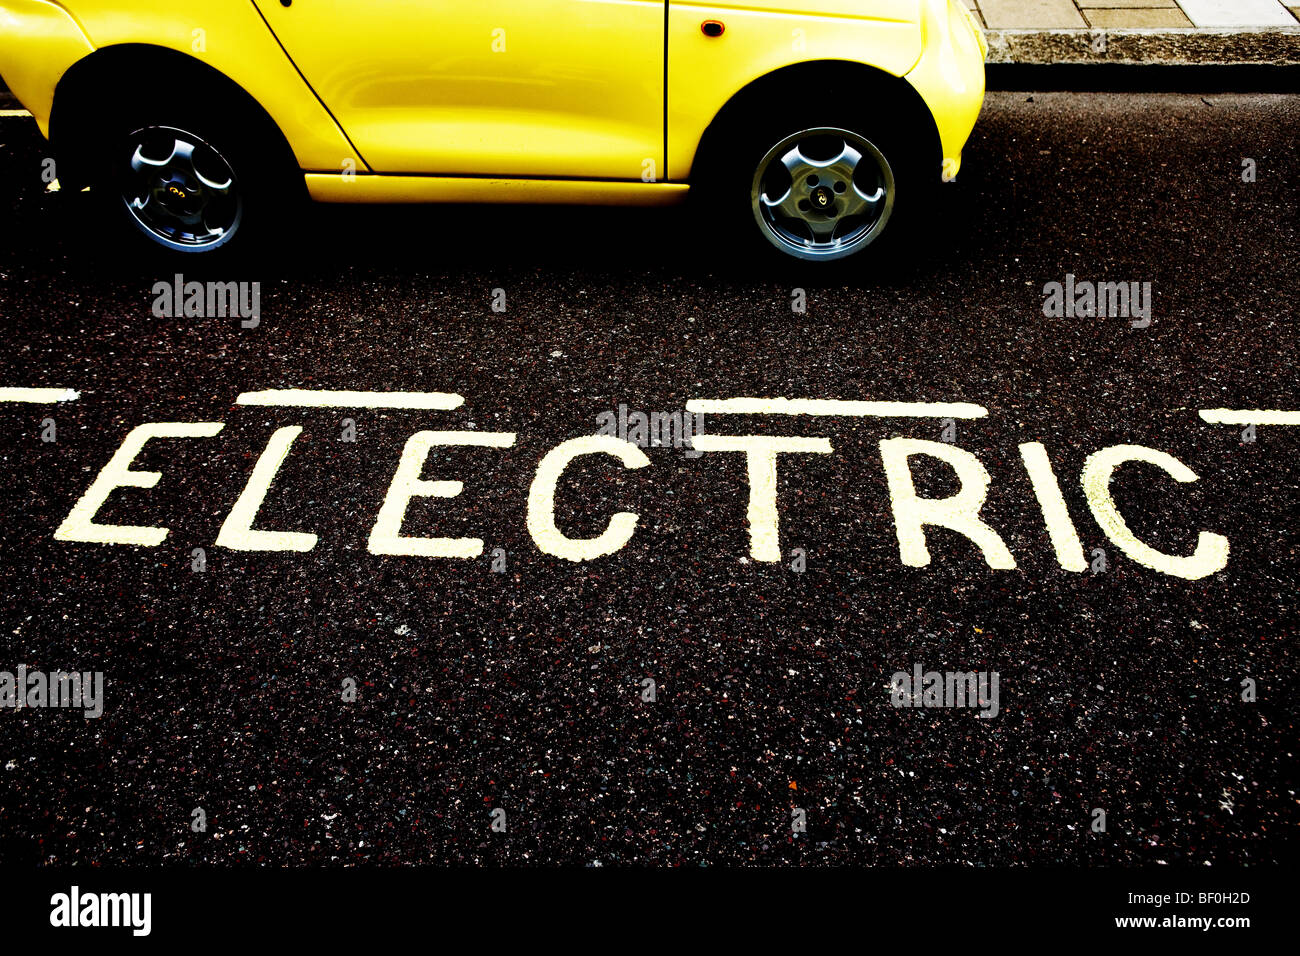 Les frais d'une voiture électrique à l'un de Westminster's 'point' de parking Banque D'Images